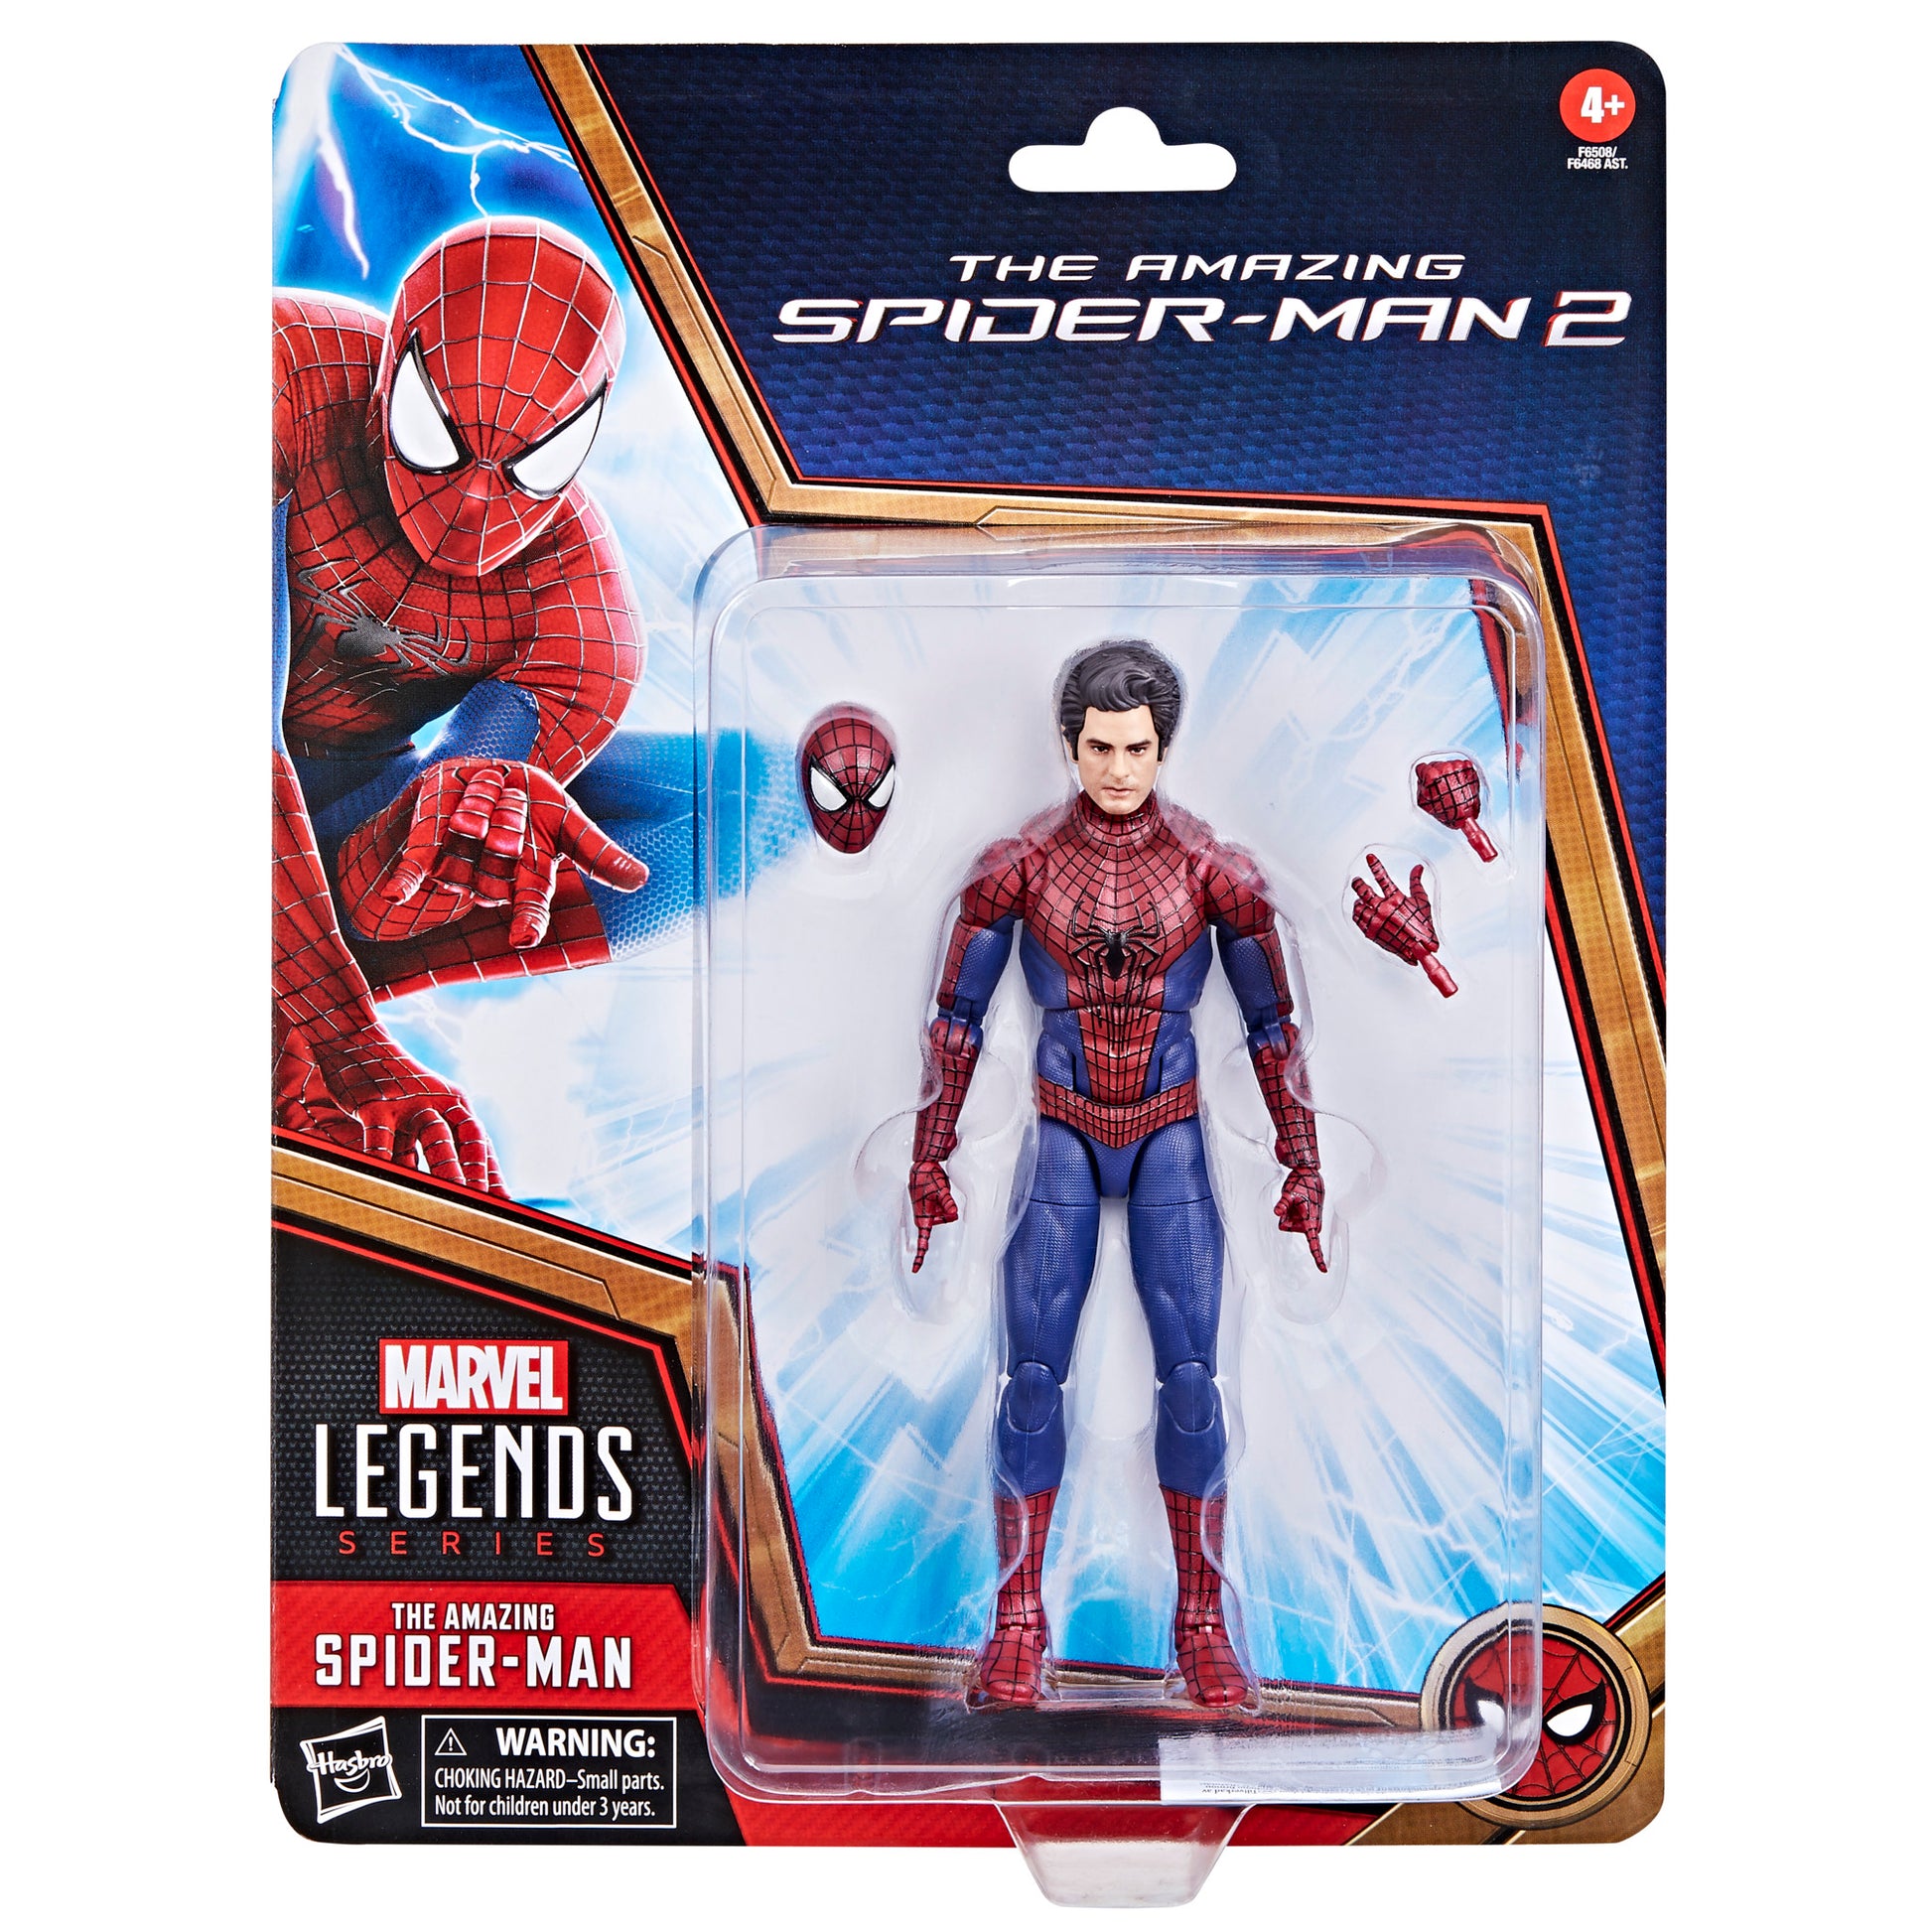 Marvel Legends Series The Amazing Spider-Man, 6" Marvel Legends Action Figures HERETOSERVEYOU